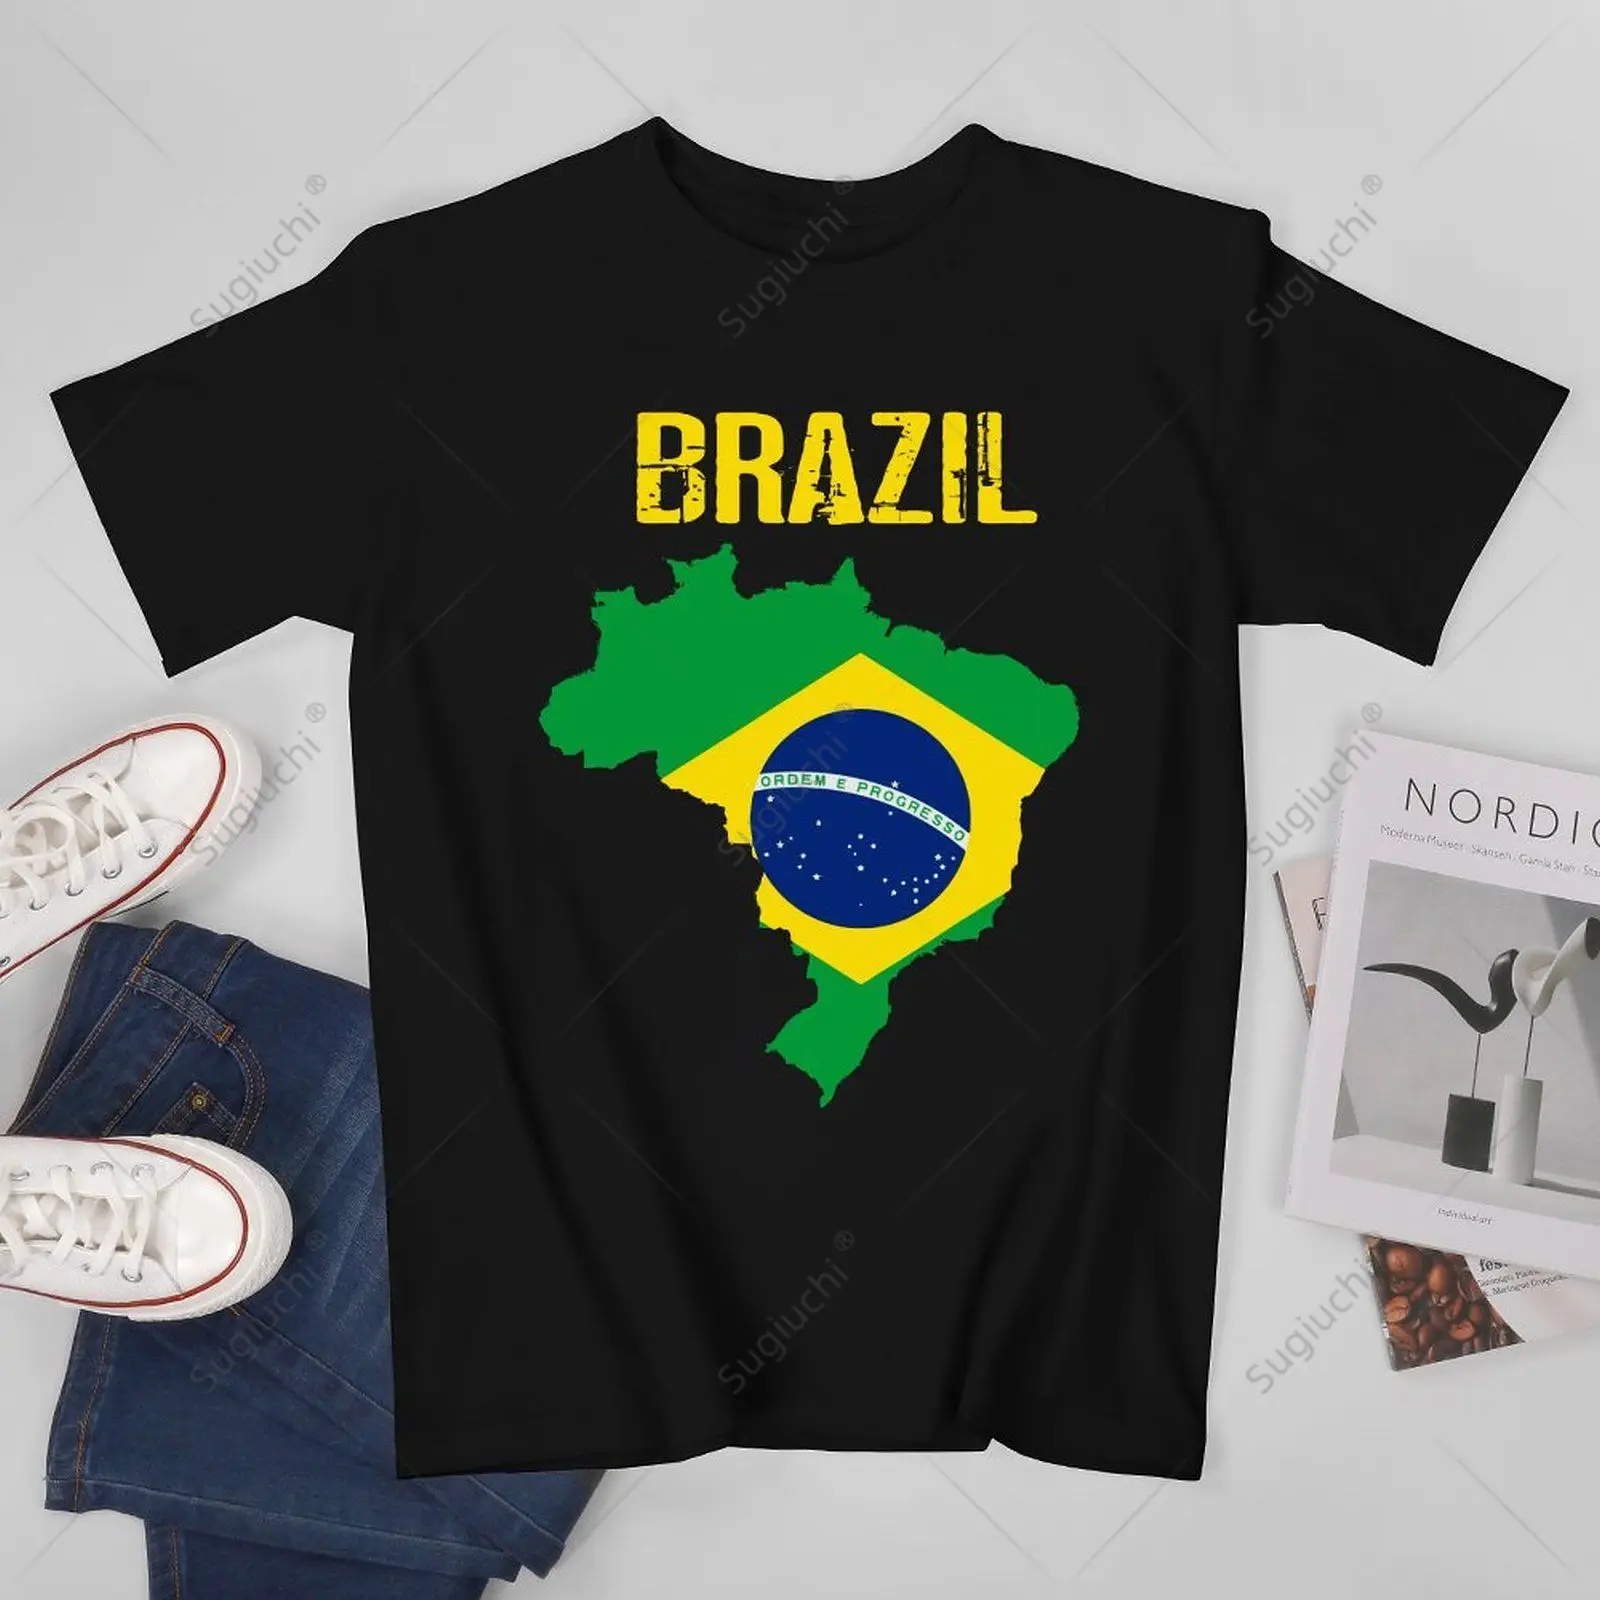 Унисекс, мужчины, Бразилия, флаг Бразилии, Бразилия, футболки, футболки для женщин, футболки для мальчиков из 100% хлопка 0